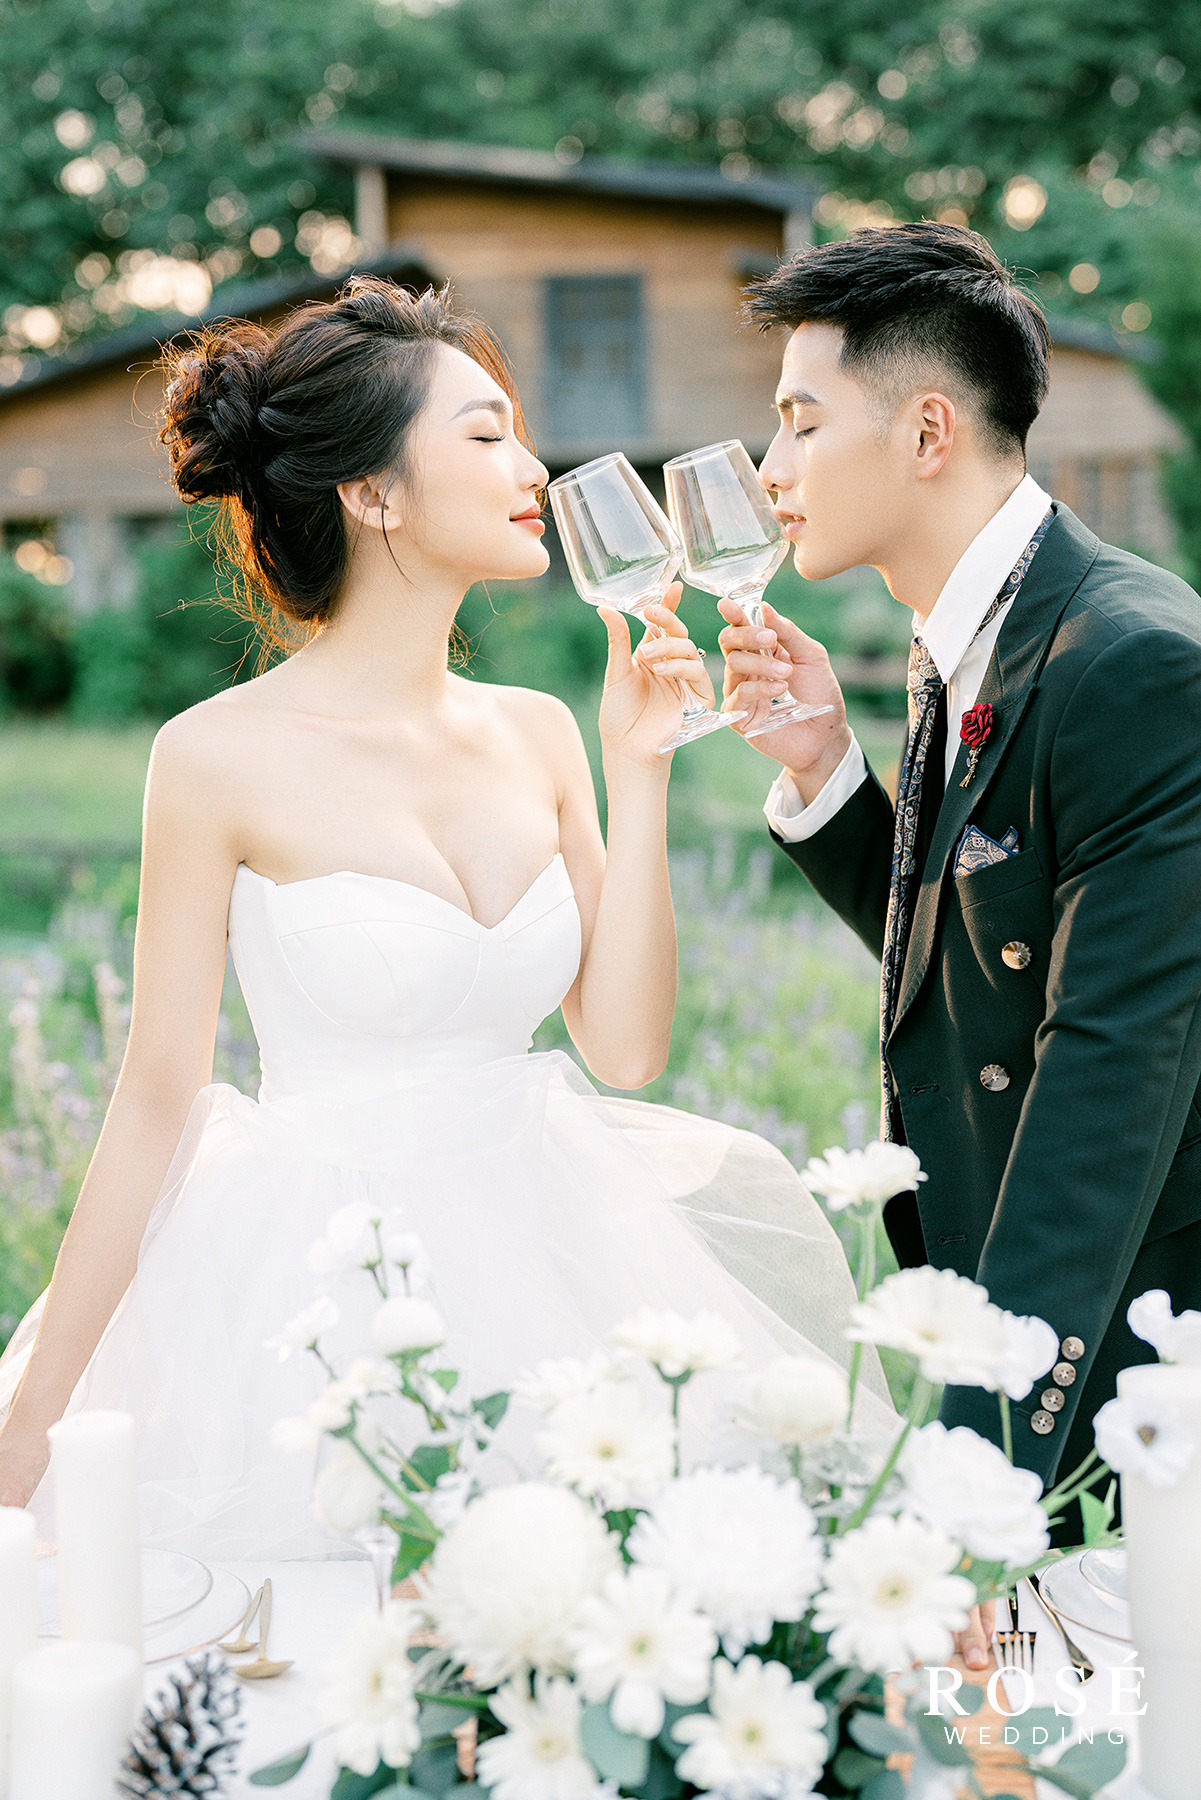 Hé lộ ảnh cưới đẹp lung linh của “Gương mặt đẹp nhất Hoa hậu Hoàn vũ Việt Nam” - Ảnh 8.